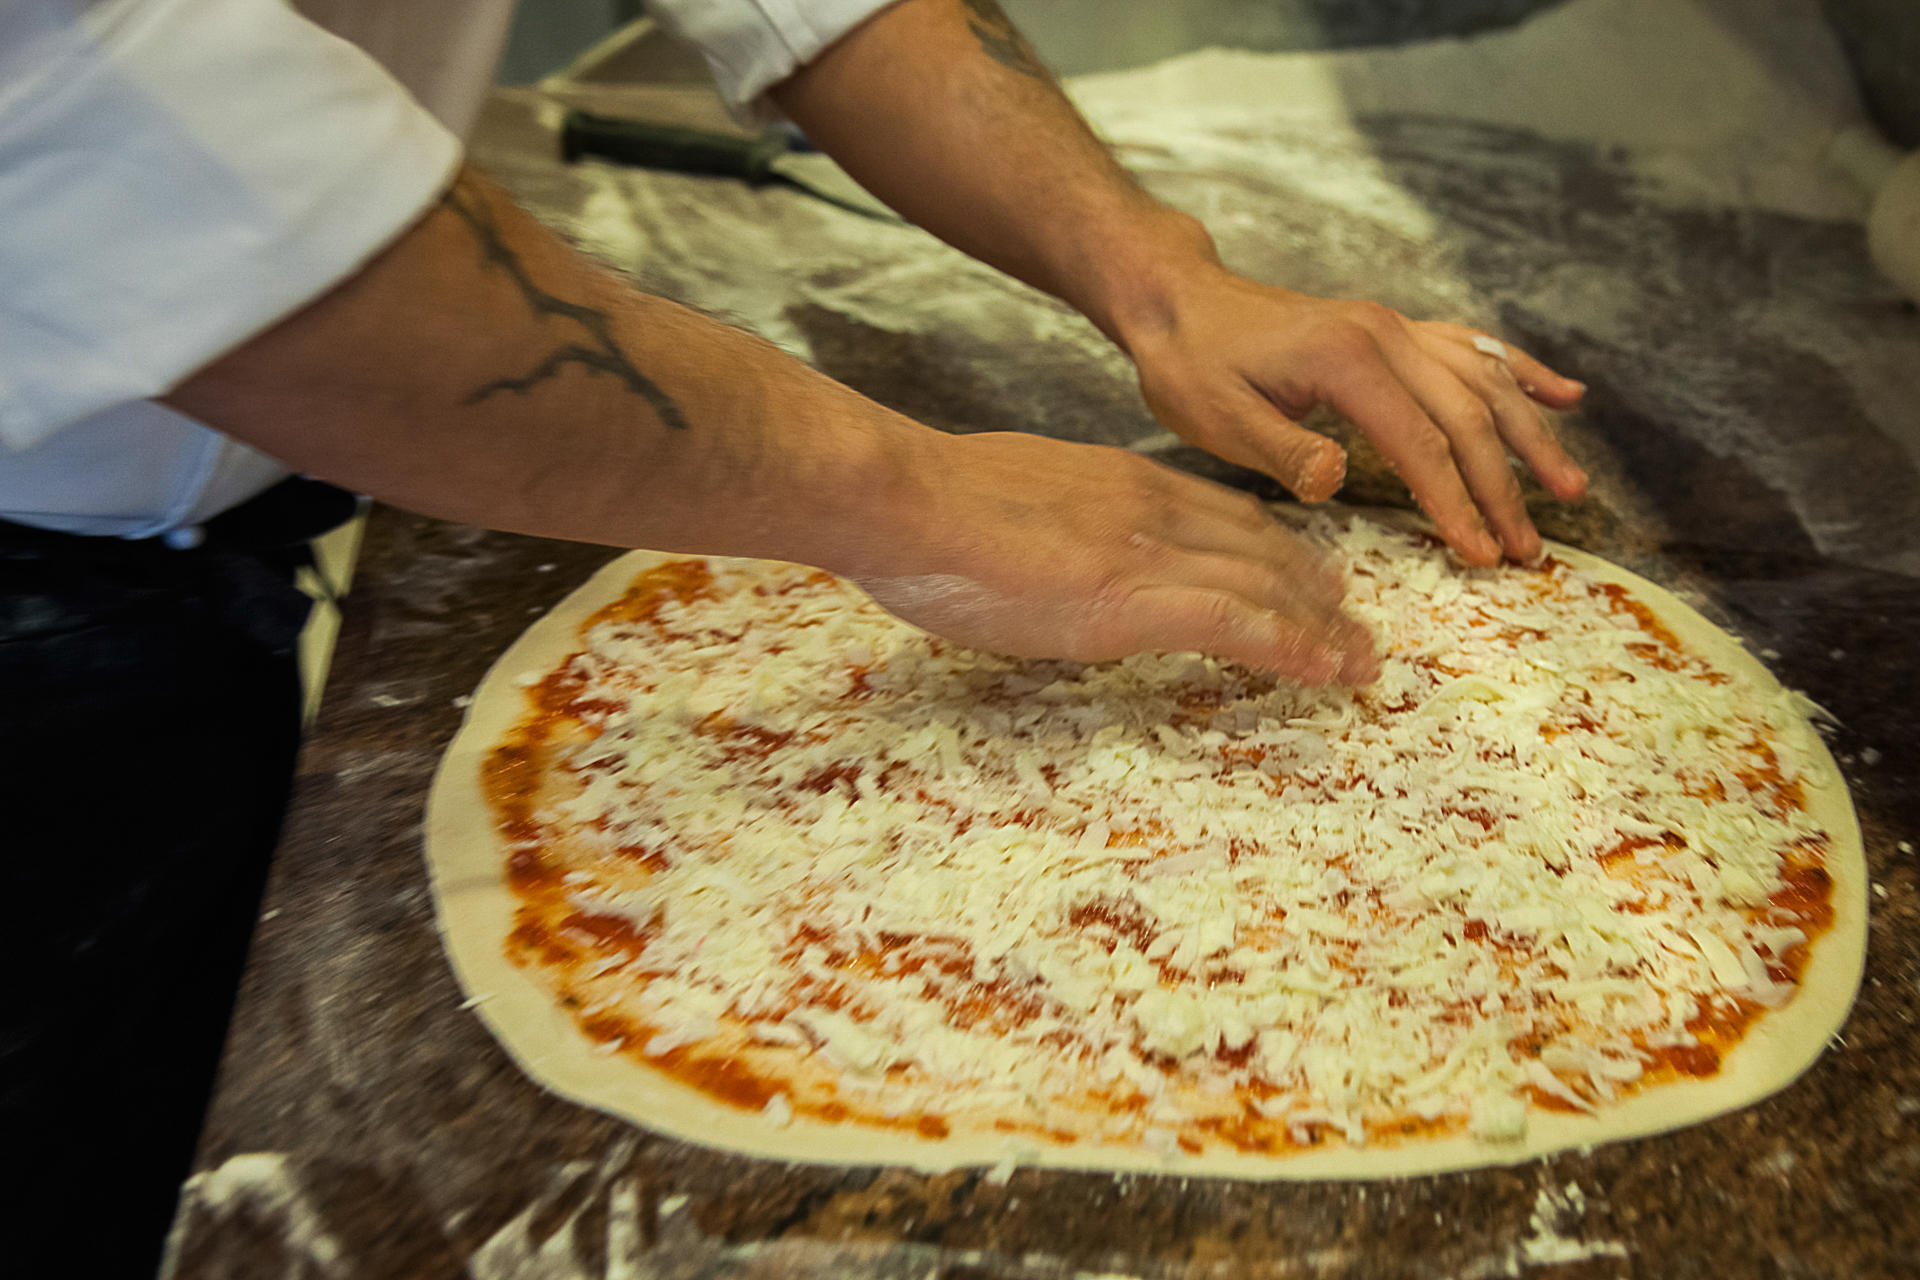 Μετά από αυτό δύσκολα θα ξαναφάτε πίτσα – Διαβάστε τι ασύλληπτο έκανε υπάλληλος πιτσαρίας!